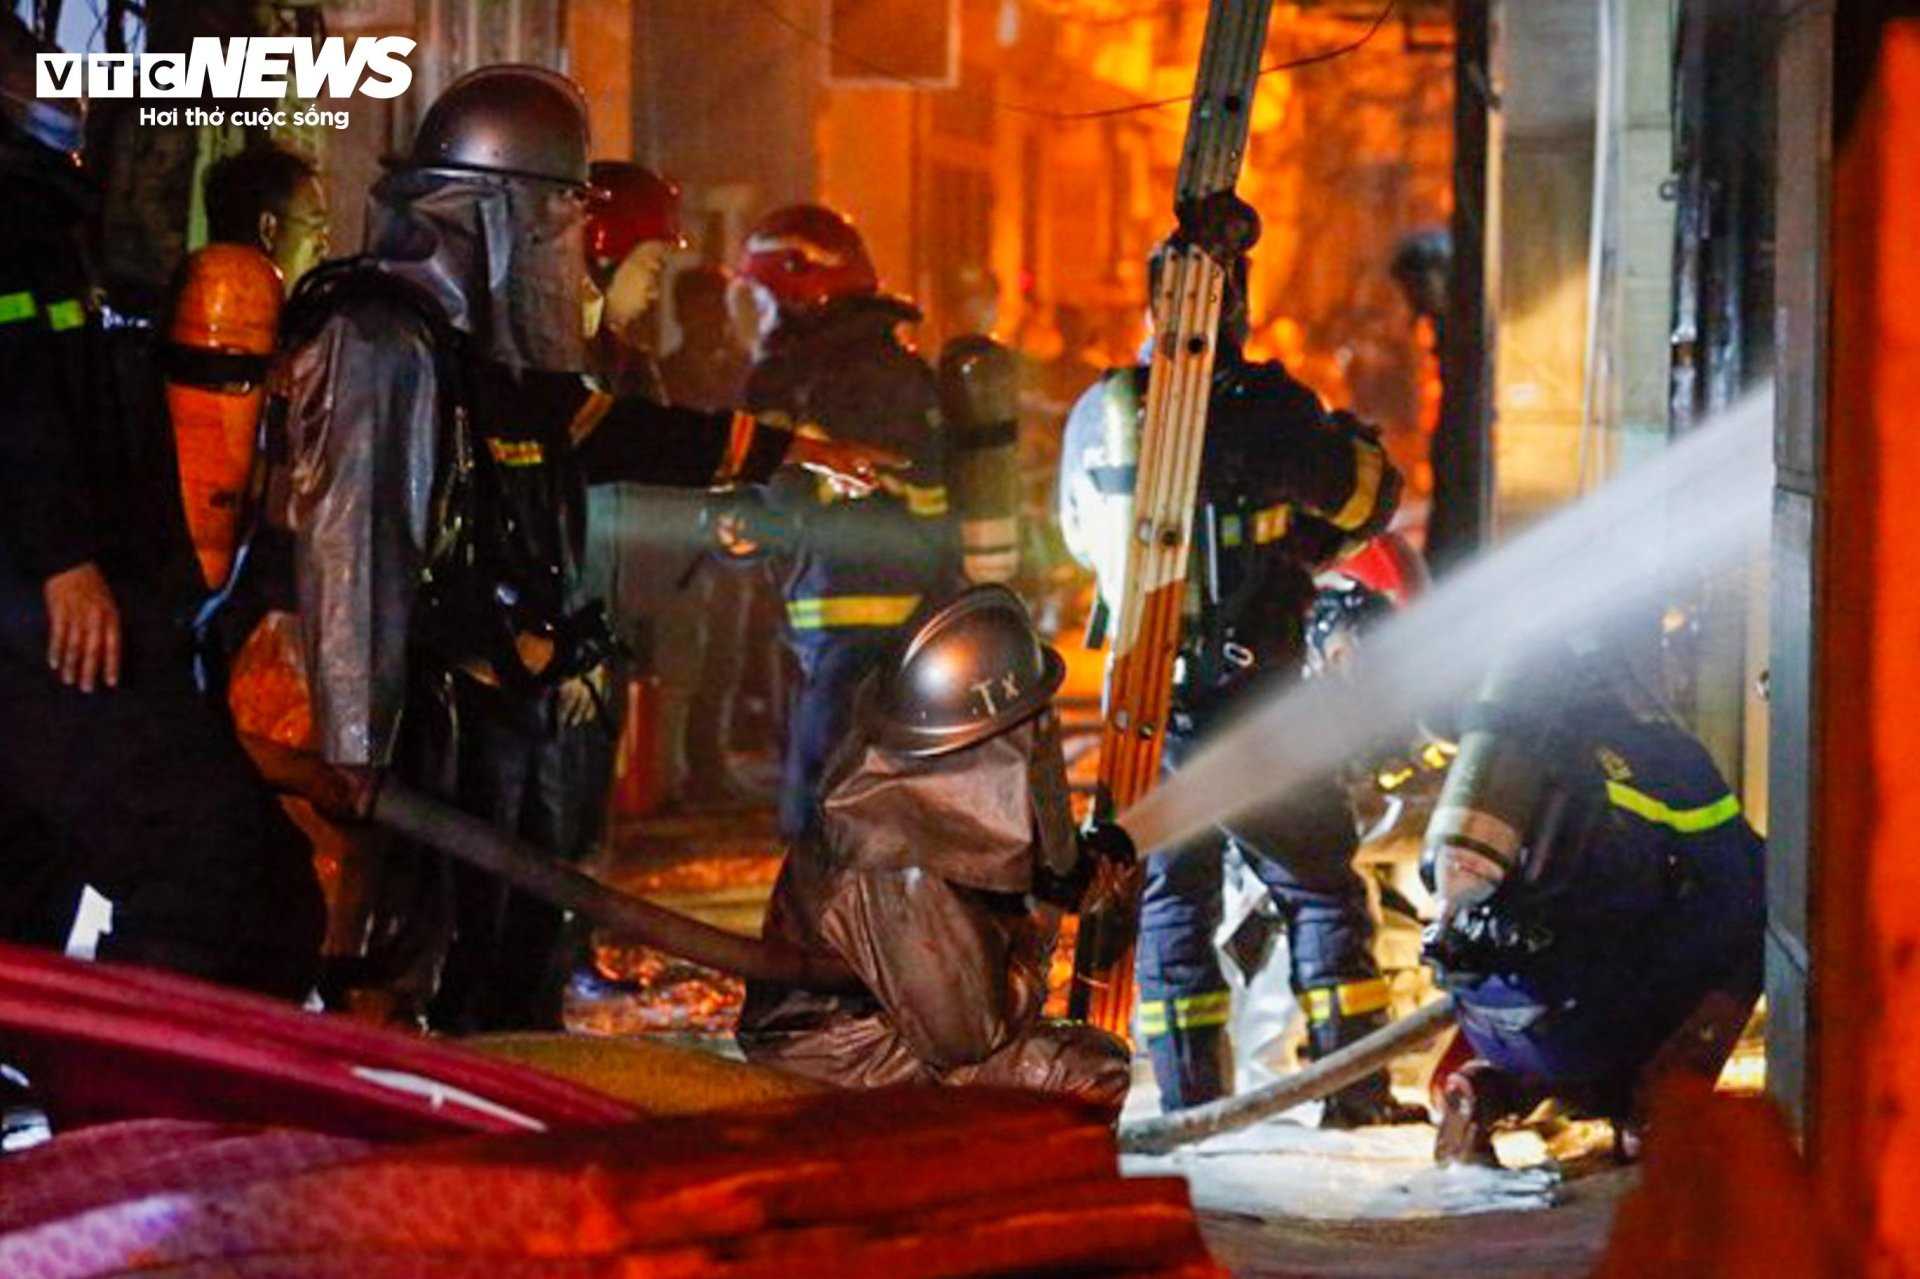 Hiện trường vụ cháy chung cư mini ở Hà Nội trong đêm, nhiều người ngất xỉu - 7